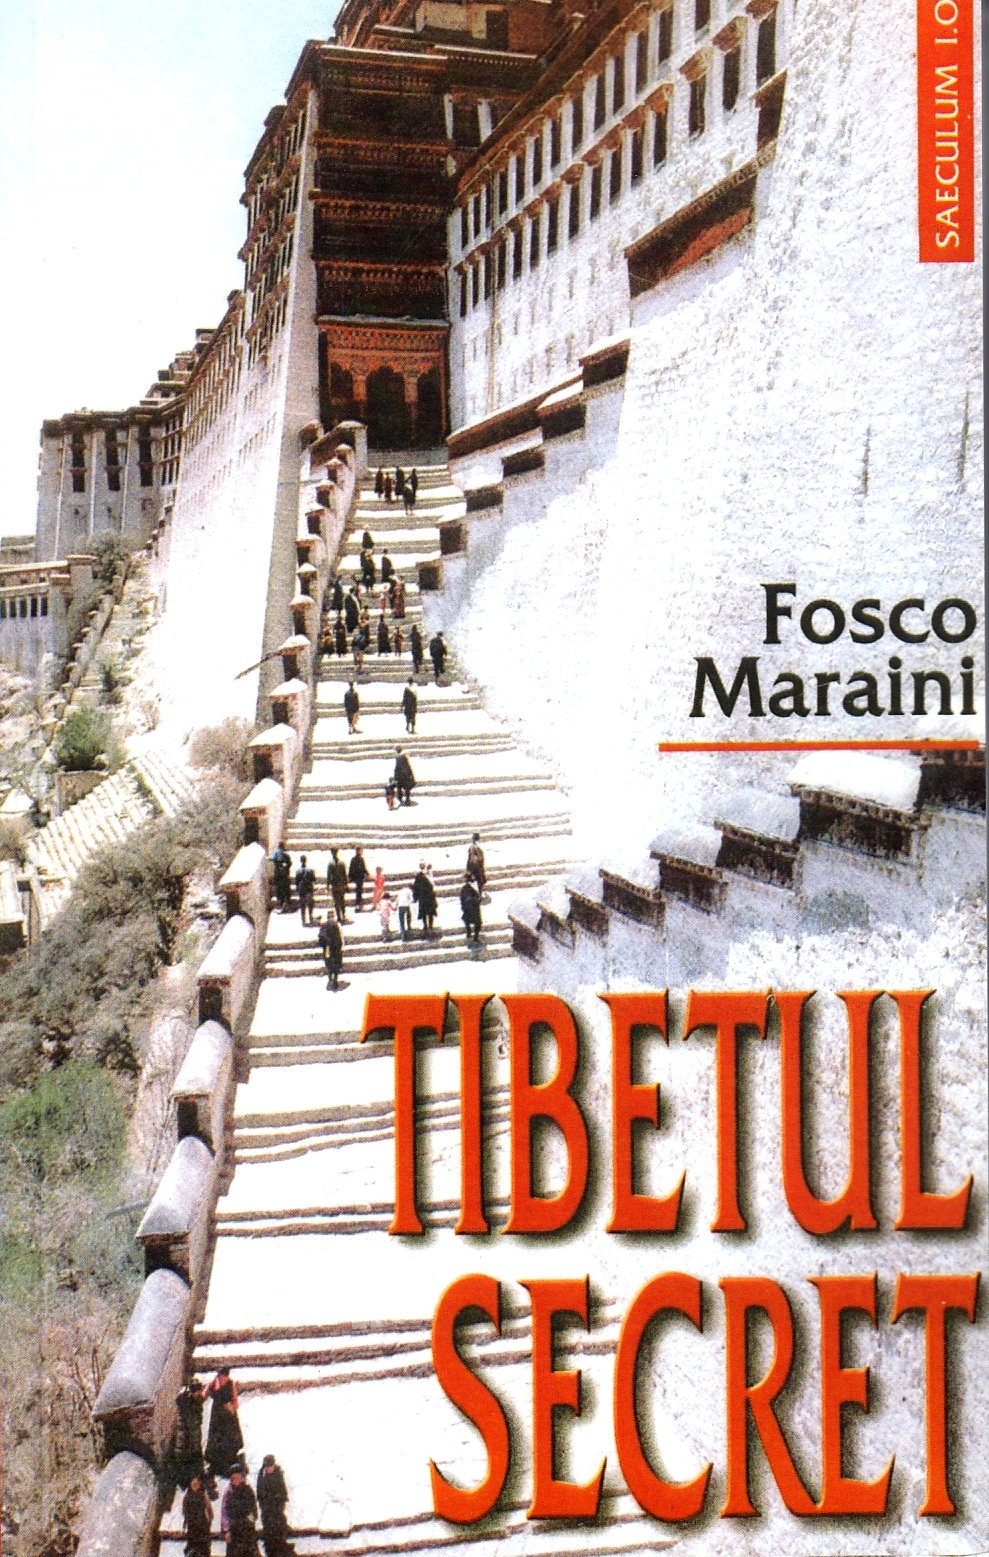 Tibetul secret - Fosco Maraini